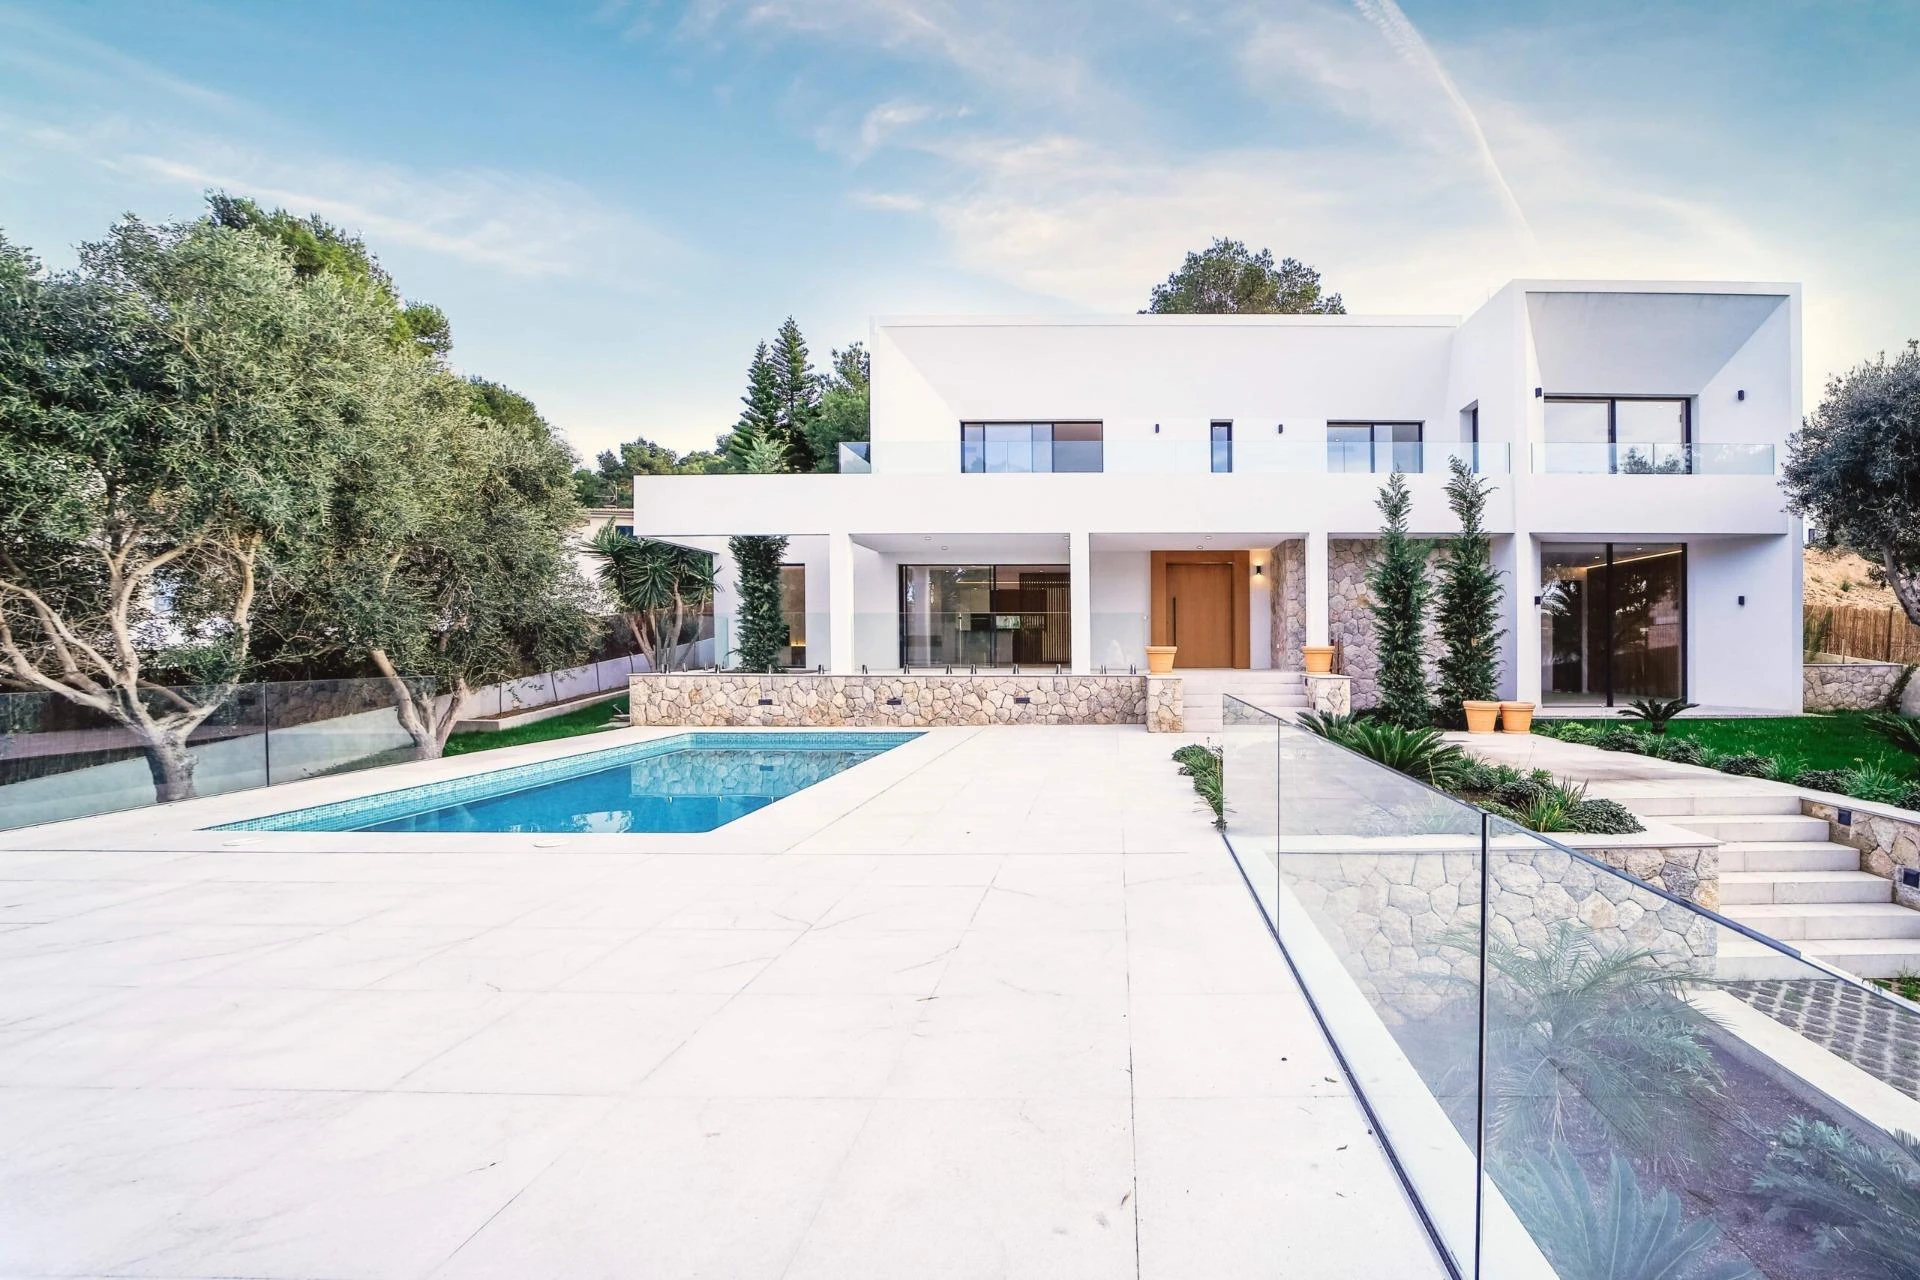 Excepcional villa contemporánea a estrenar en Santa Ponsa con jardín, piscina y cerca de playas